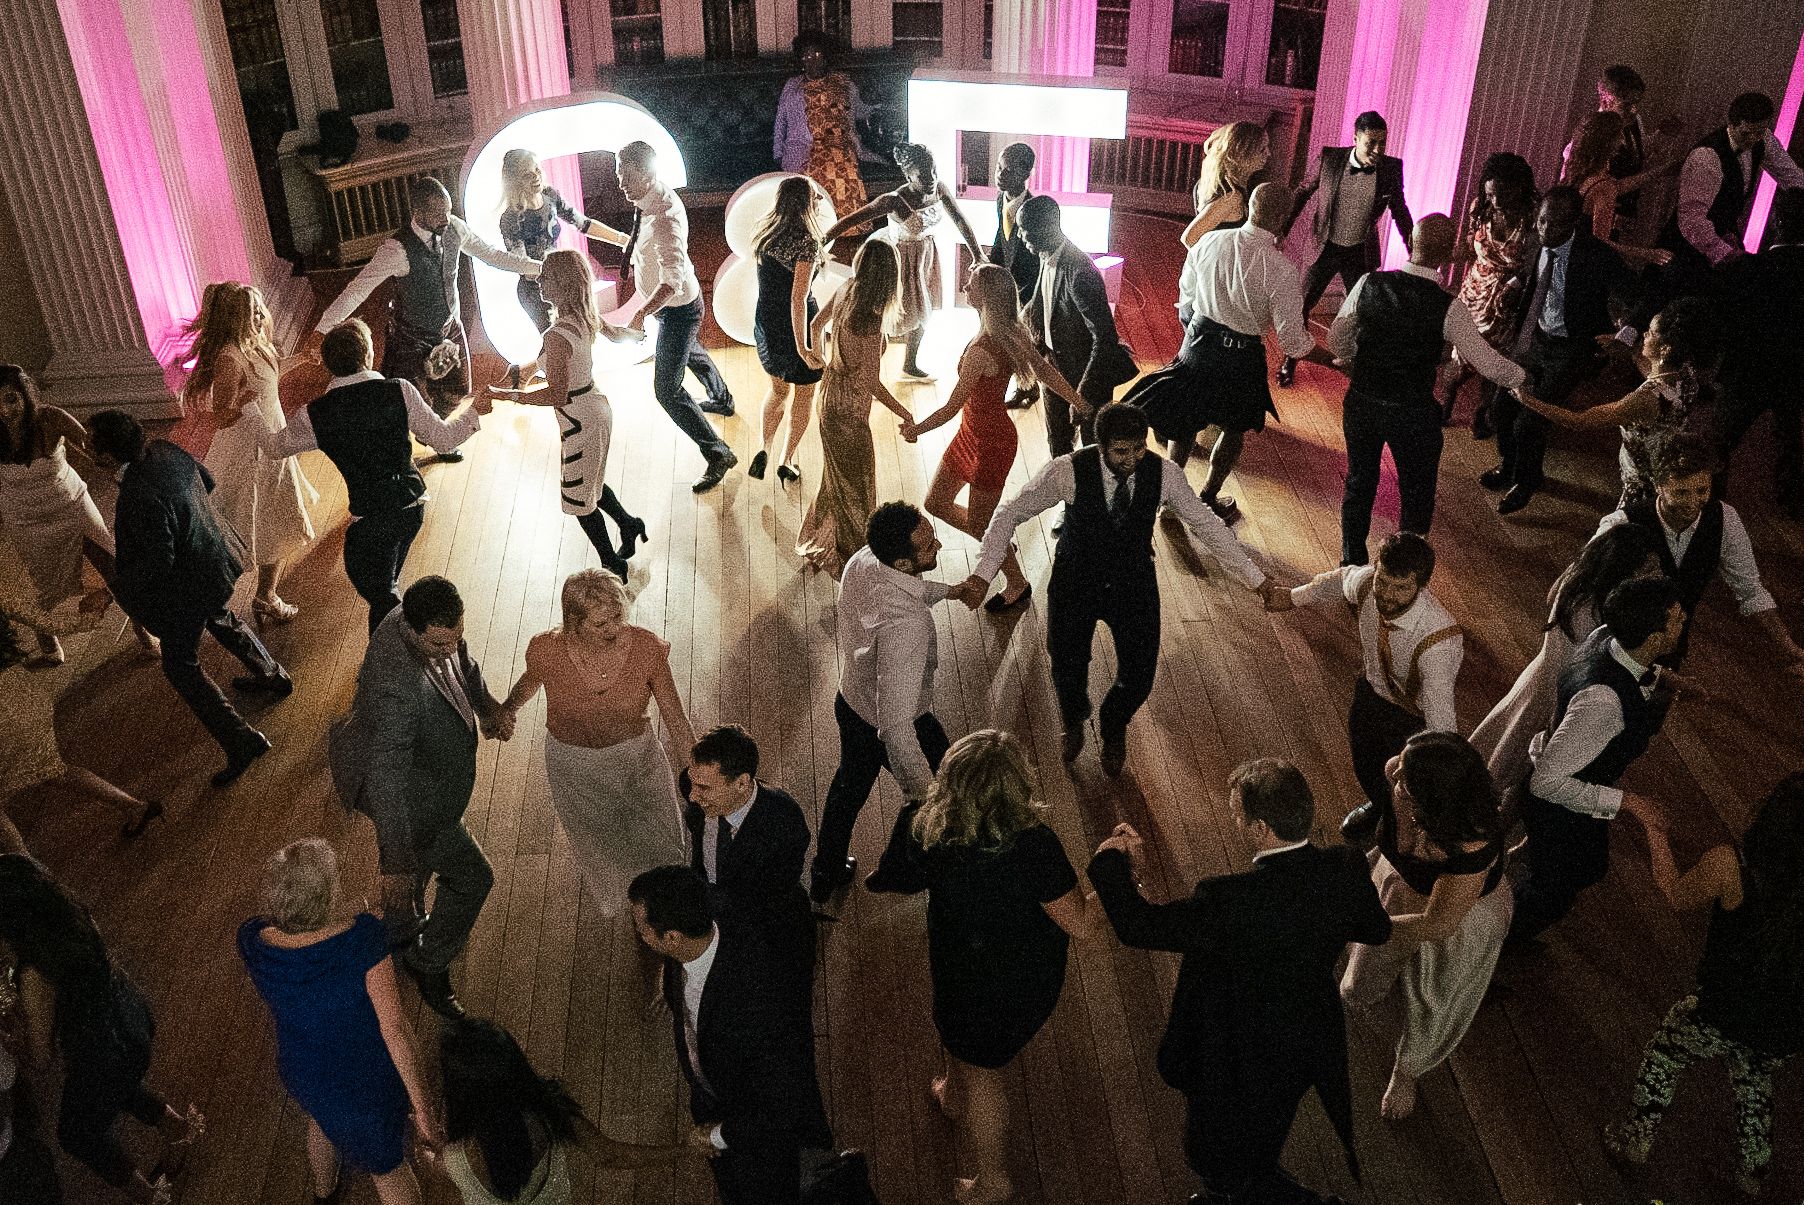 wedding guests dancing